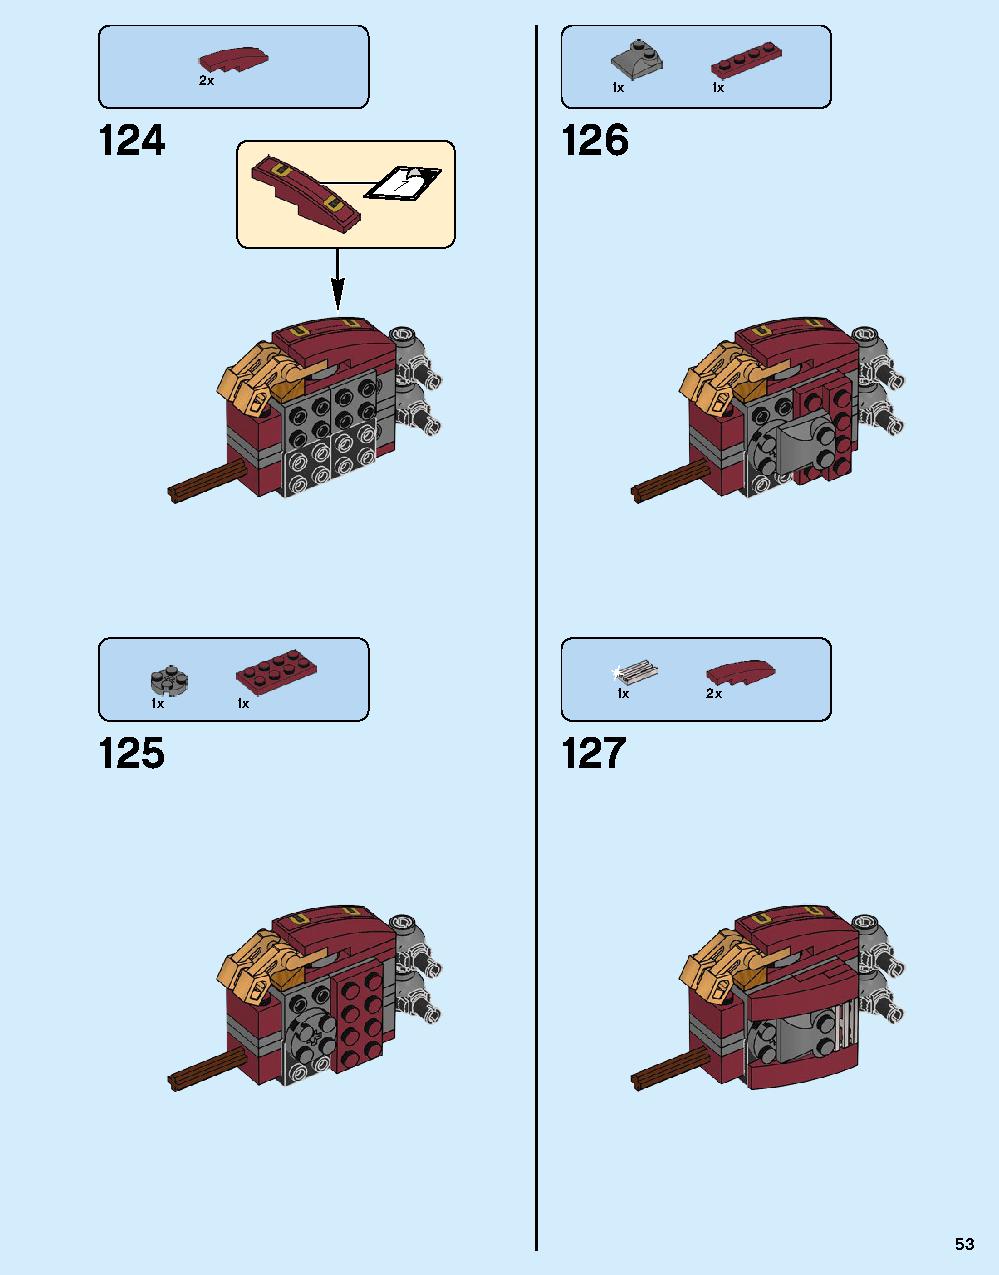 ハルクバスター：ウルトロン・エディション 76105 レゴの商品情報 レゴの説明書・組立方法 53 page